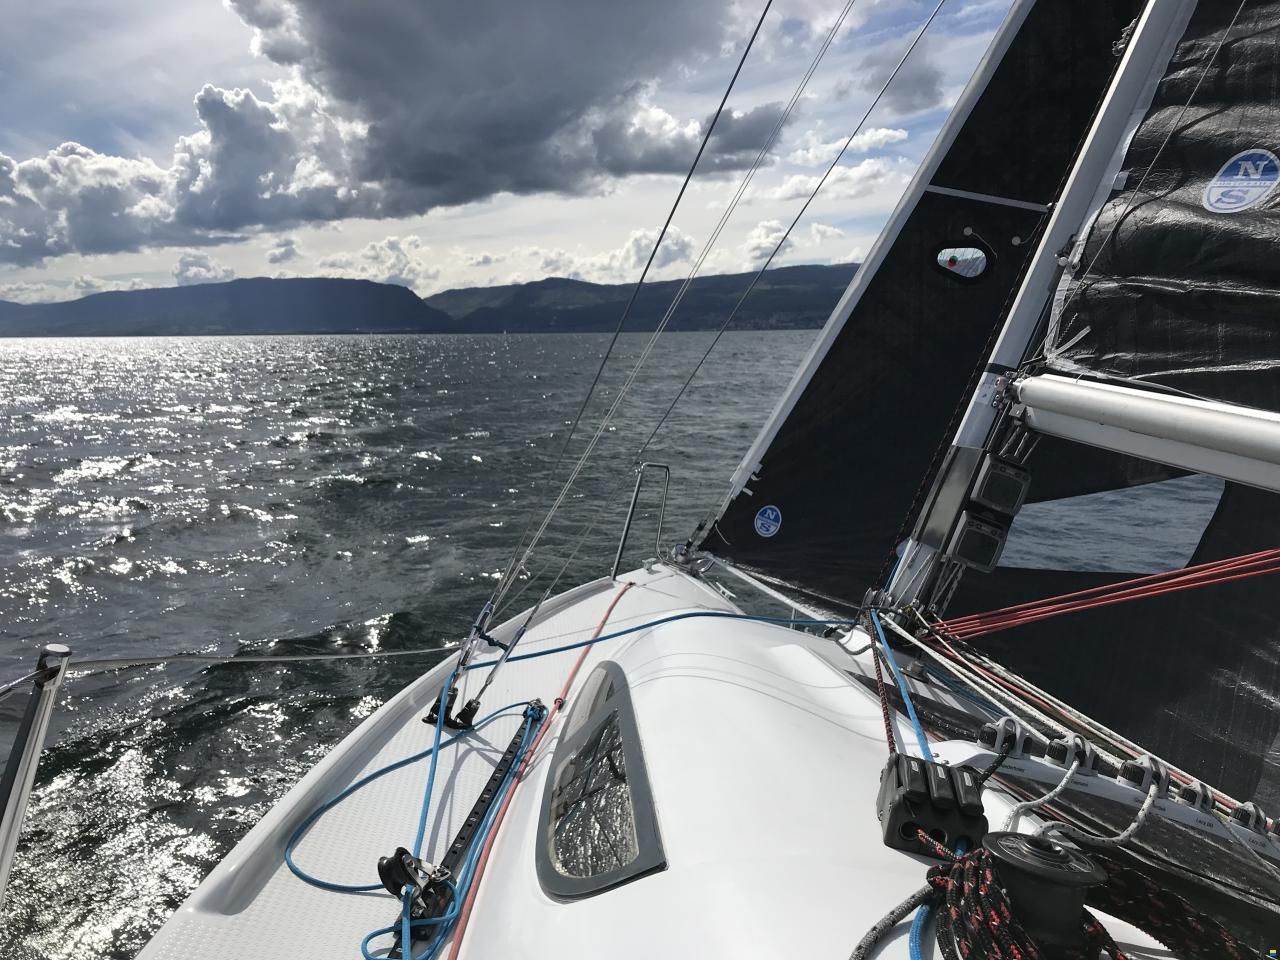 sail-yabyum: Überspannungswächter